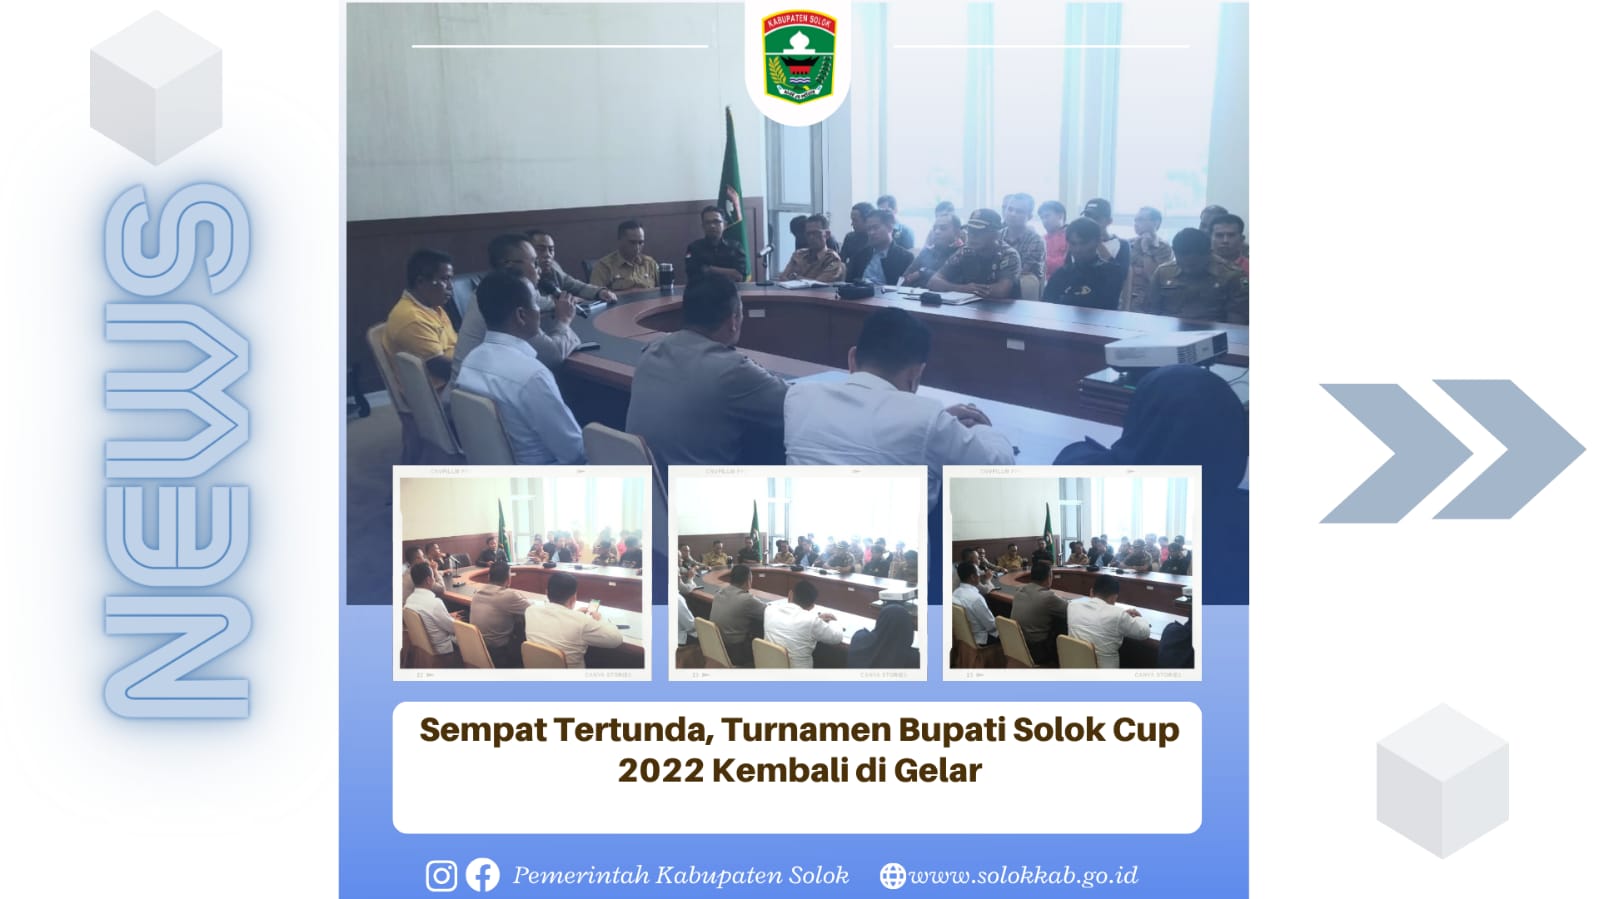 Sempat Tertunda, Turnamen Bupati Solok Cup 2022 Kembali Digelar.